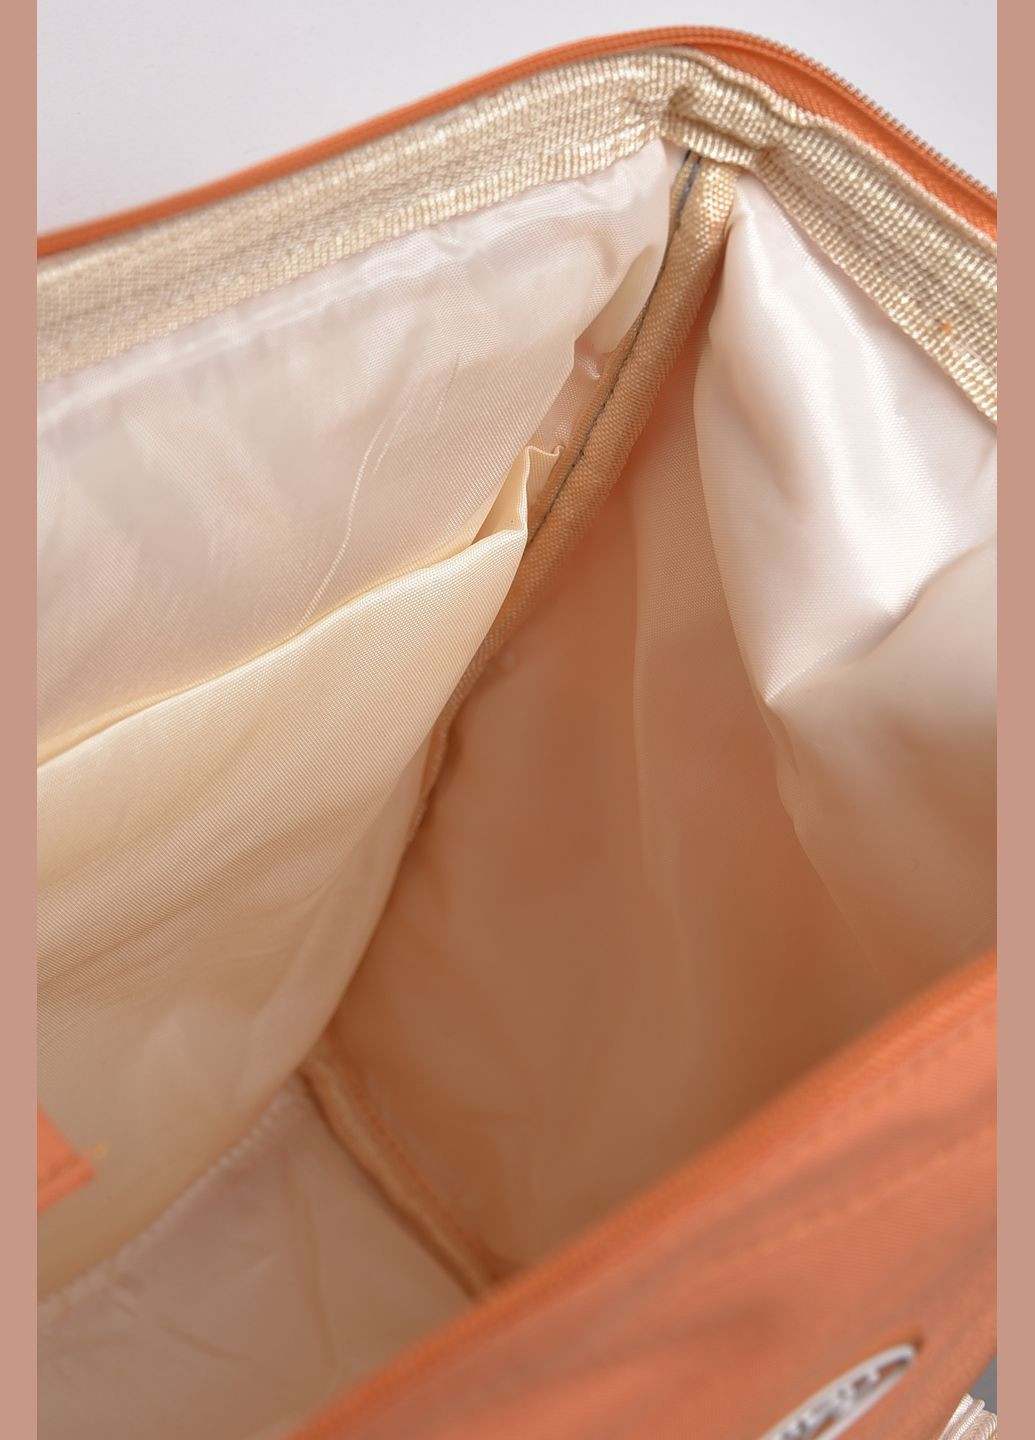 Жіночий рюкзак текстильний помаранчевого кольору Let's Shop (280938077)